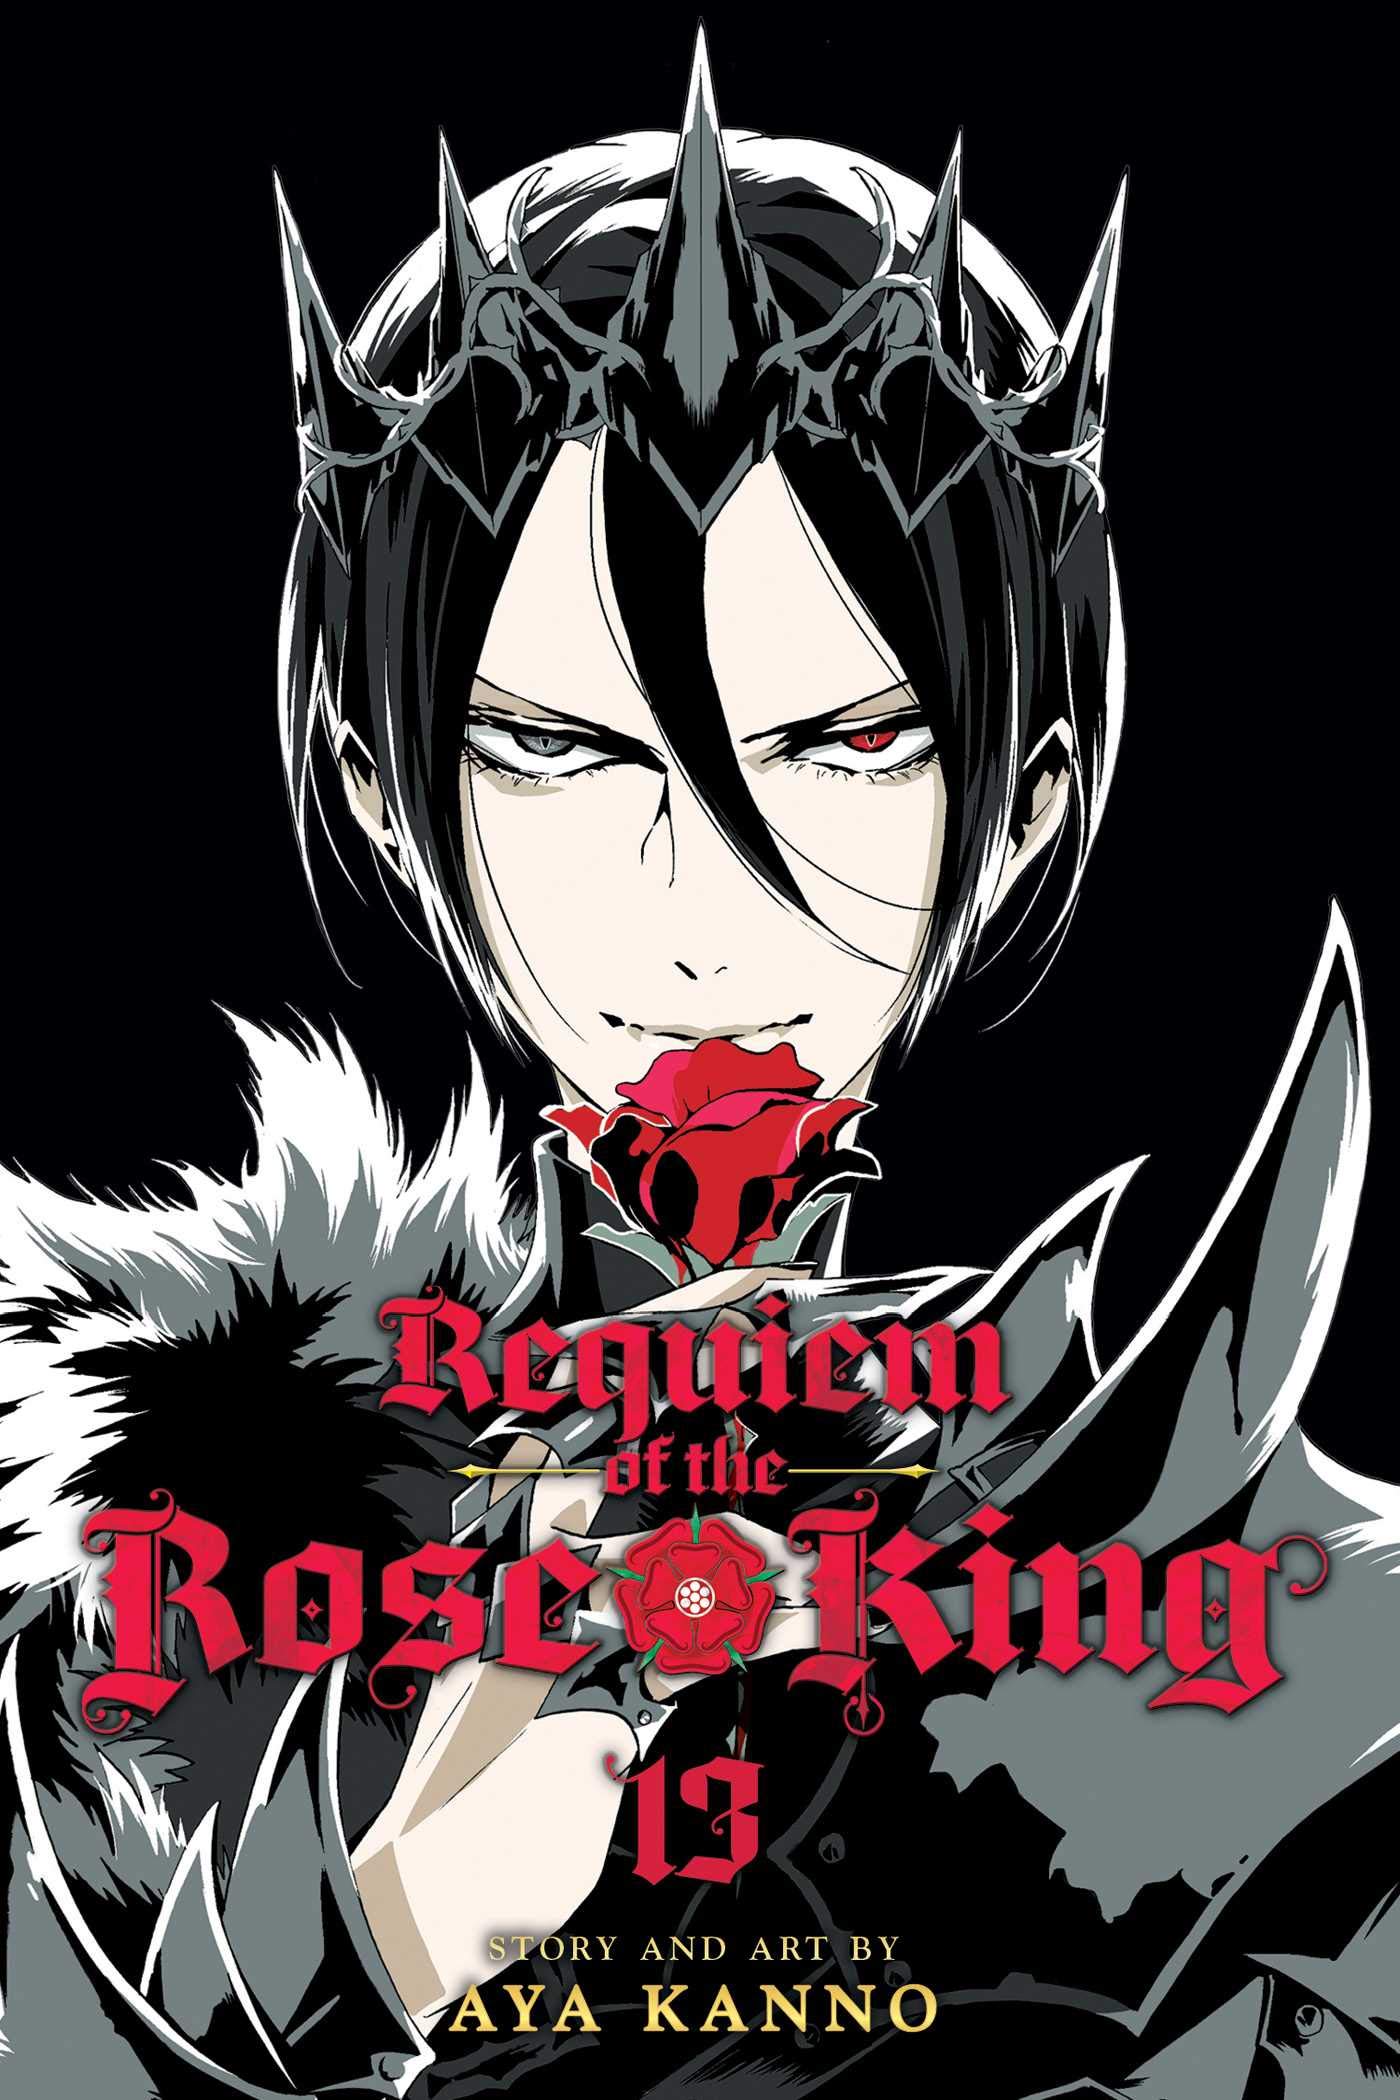 Geschlechtsspezifisches Requiem des Rosenkönigs Manga erhält TV-Anime